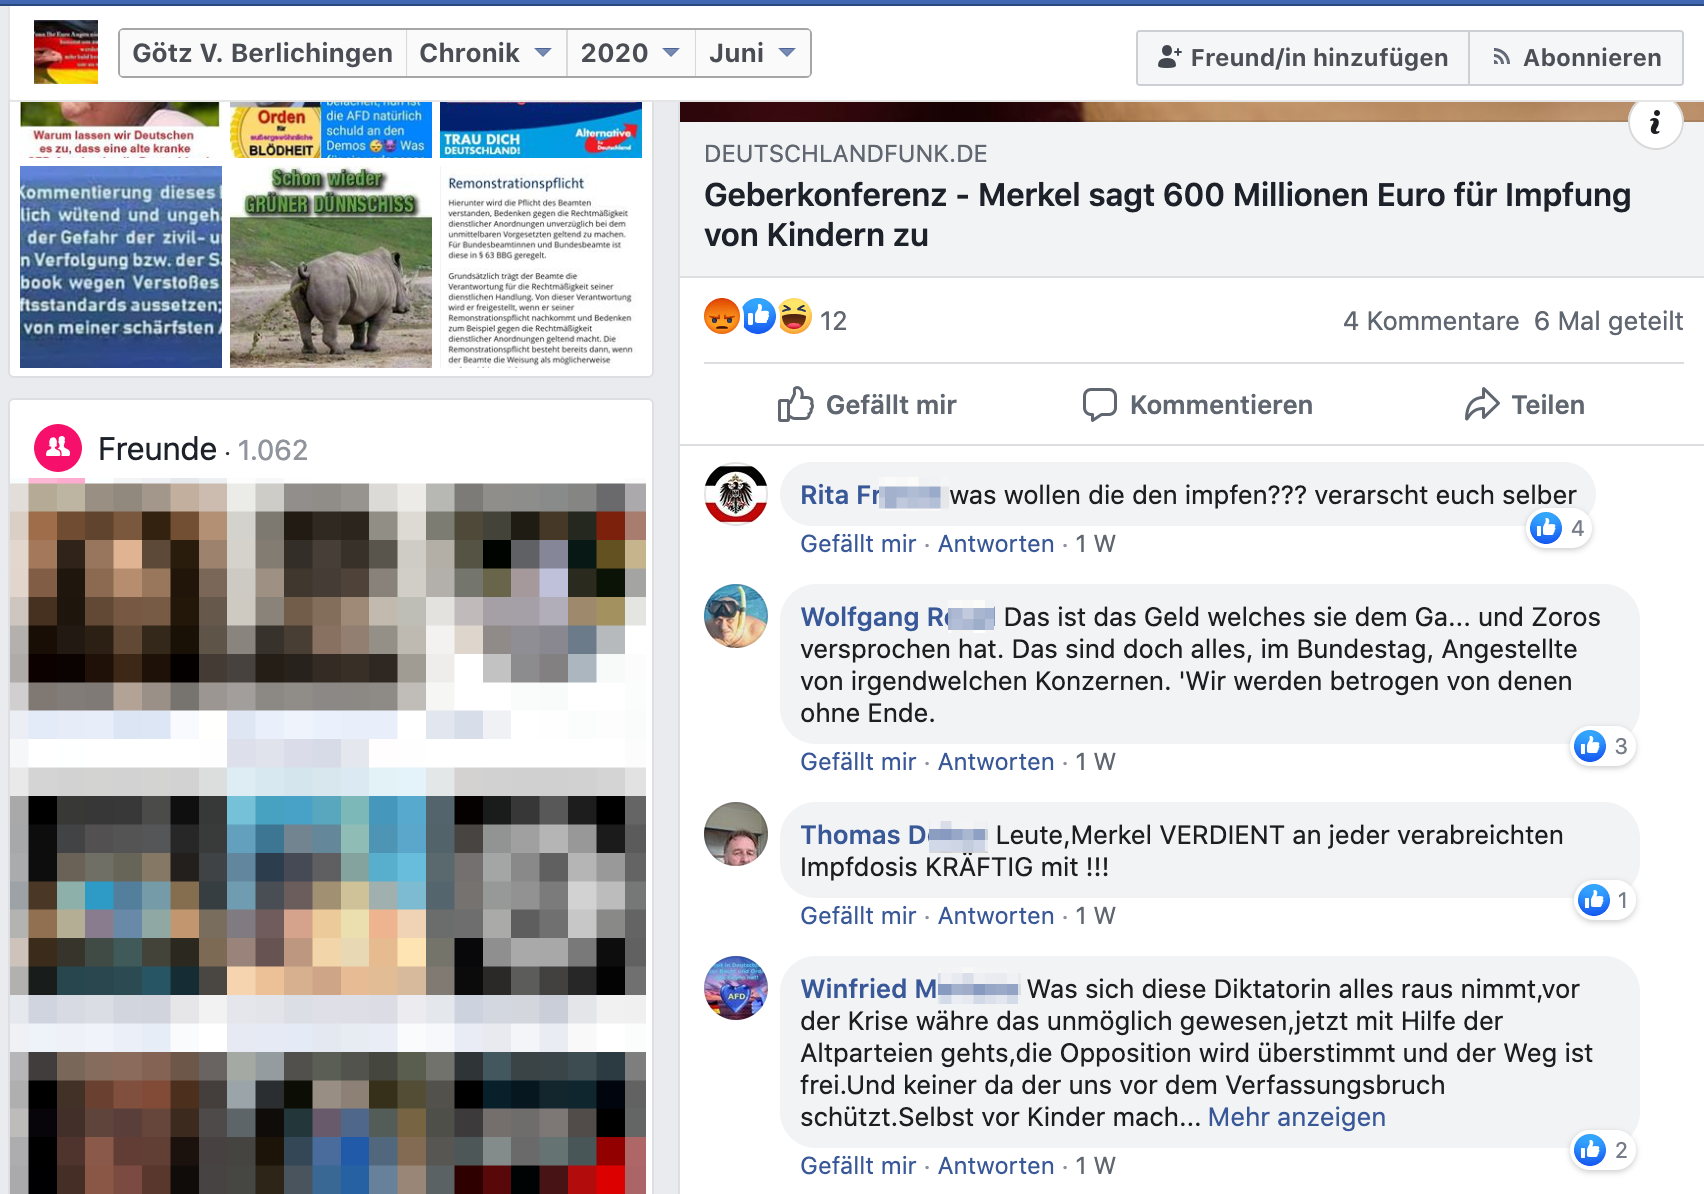 FB-Profil Götz V. Berlichingen zwischen Verschwörungsmythen und Nazi-Schrott